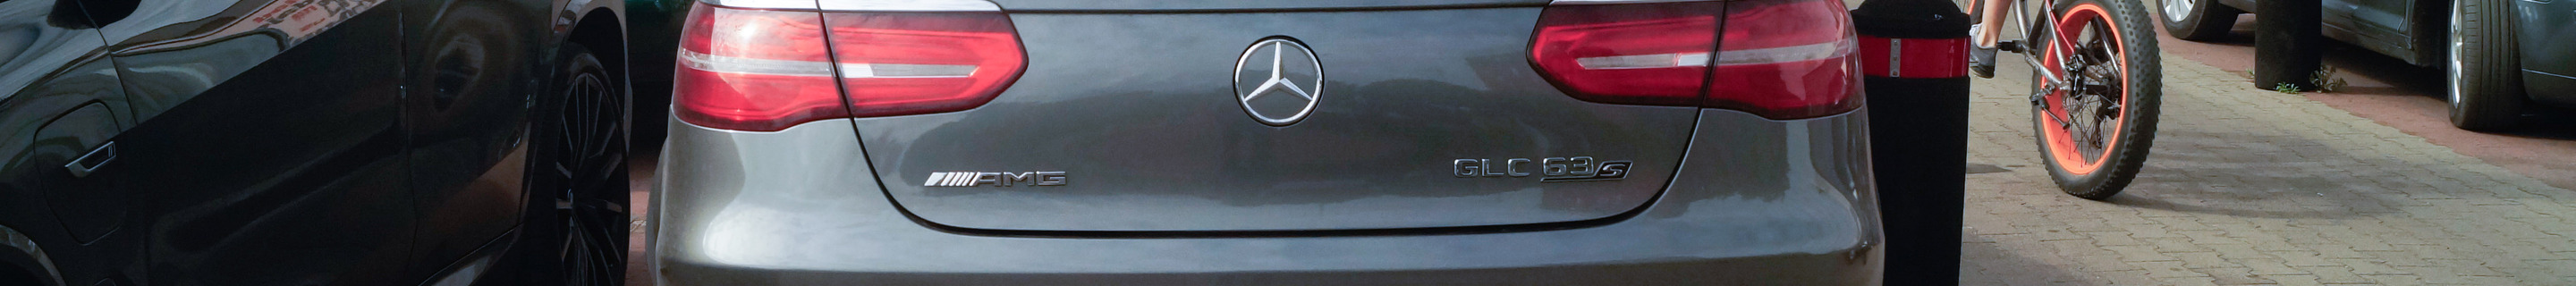 Mercedes-AMG GLC 63 S Coupé Edition 1 C253